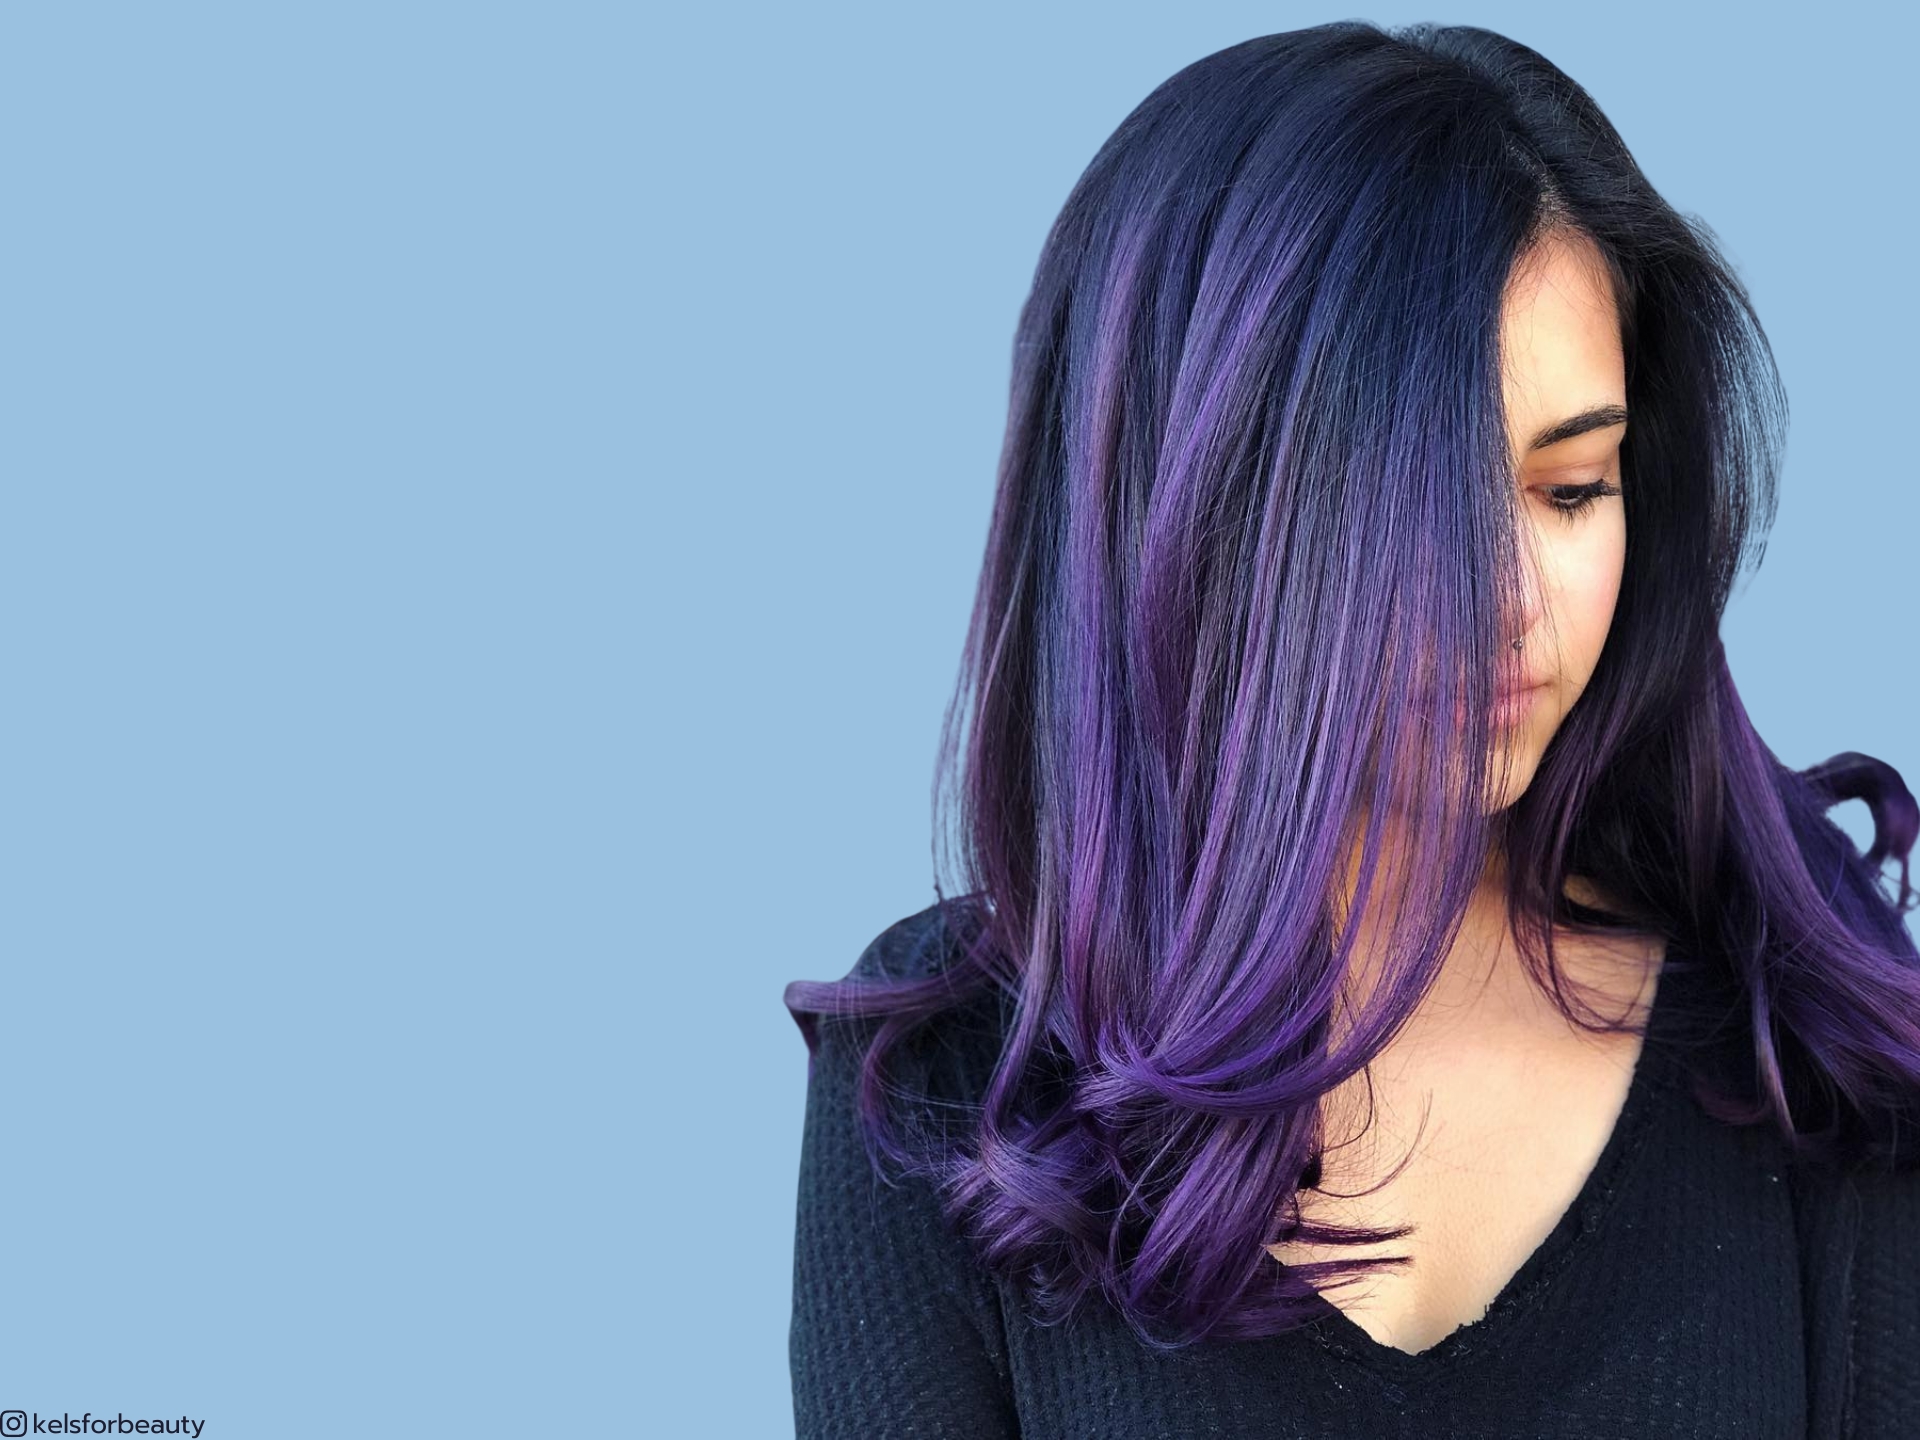 Les magnifiques coiffures violet nuit feront fureur cette année